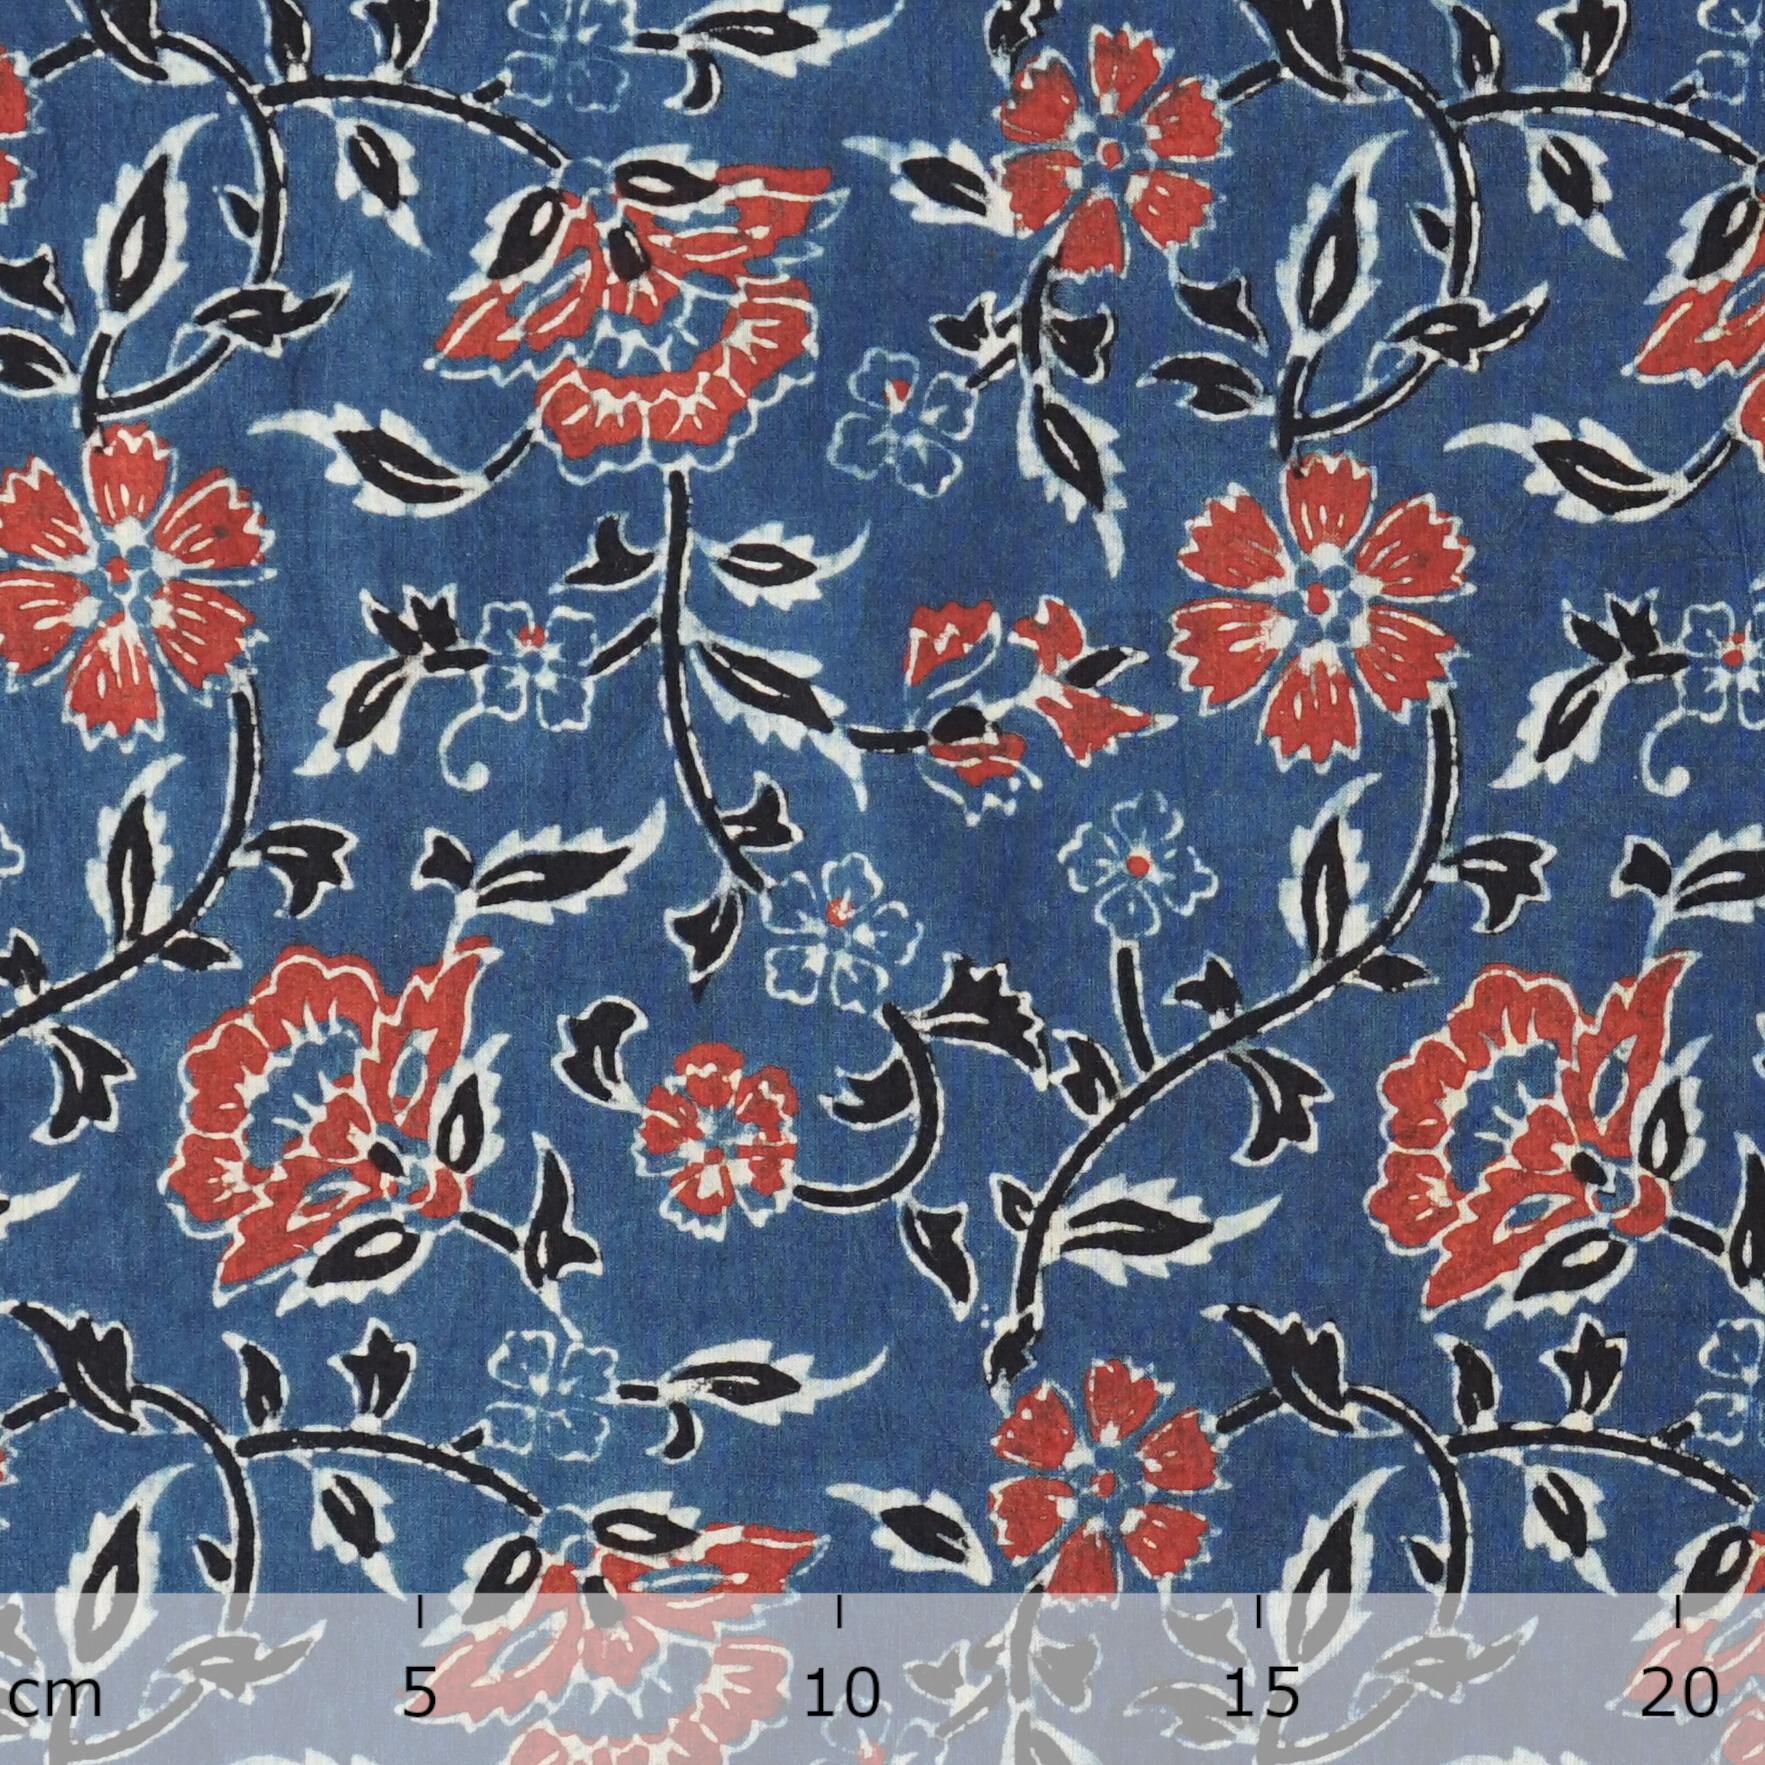 SIK30 - Indian Block-Printed Cotton - Spring Breeze Design - Indigo, Red & Black Dye - Ruler